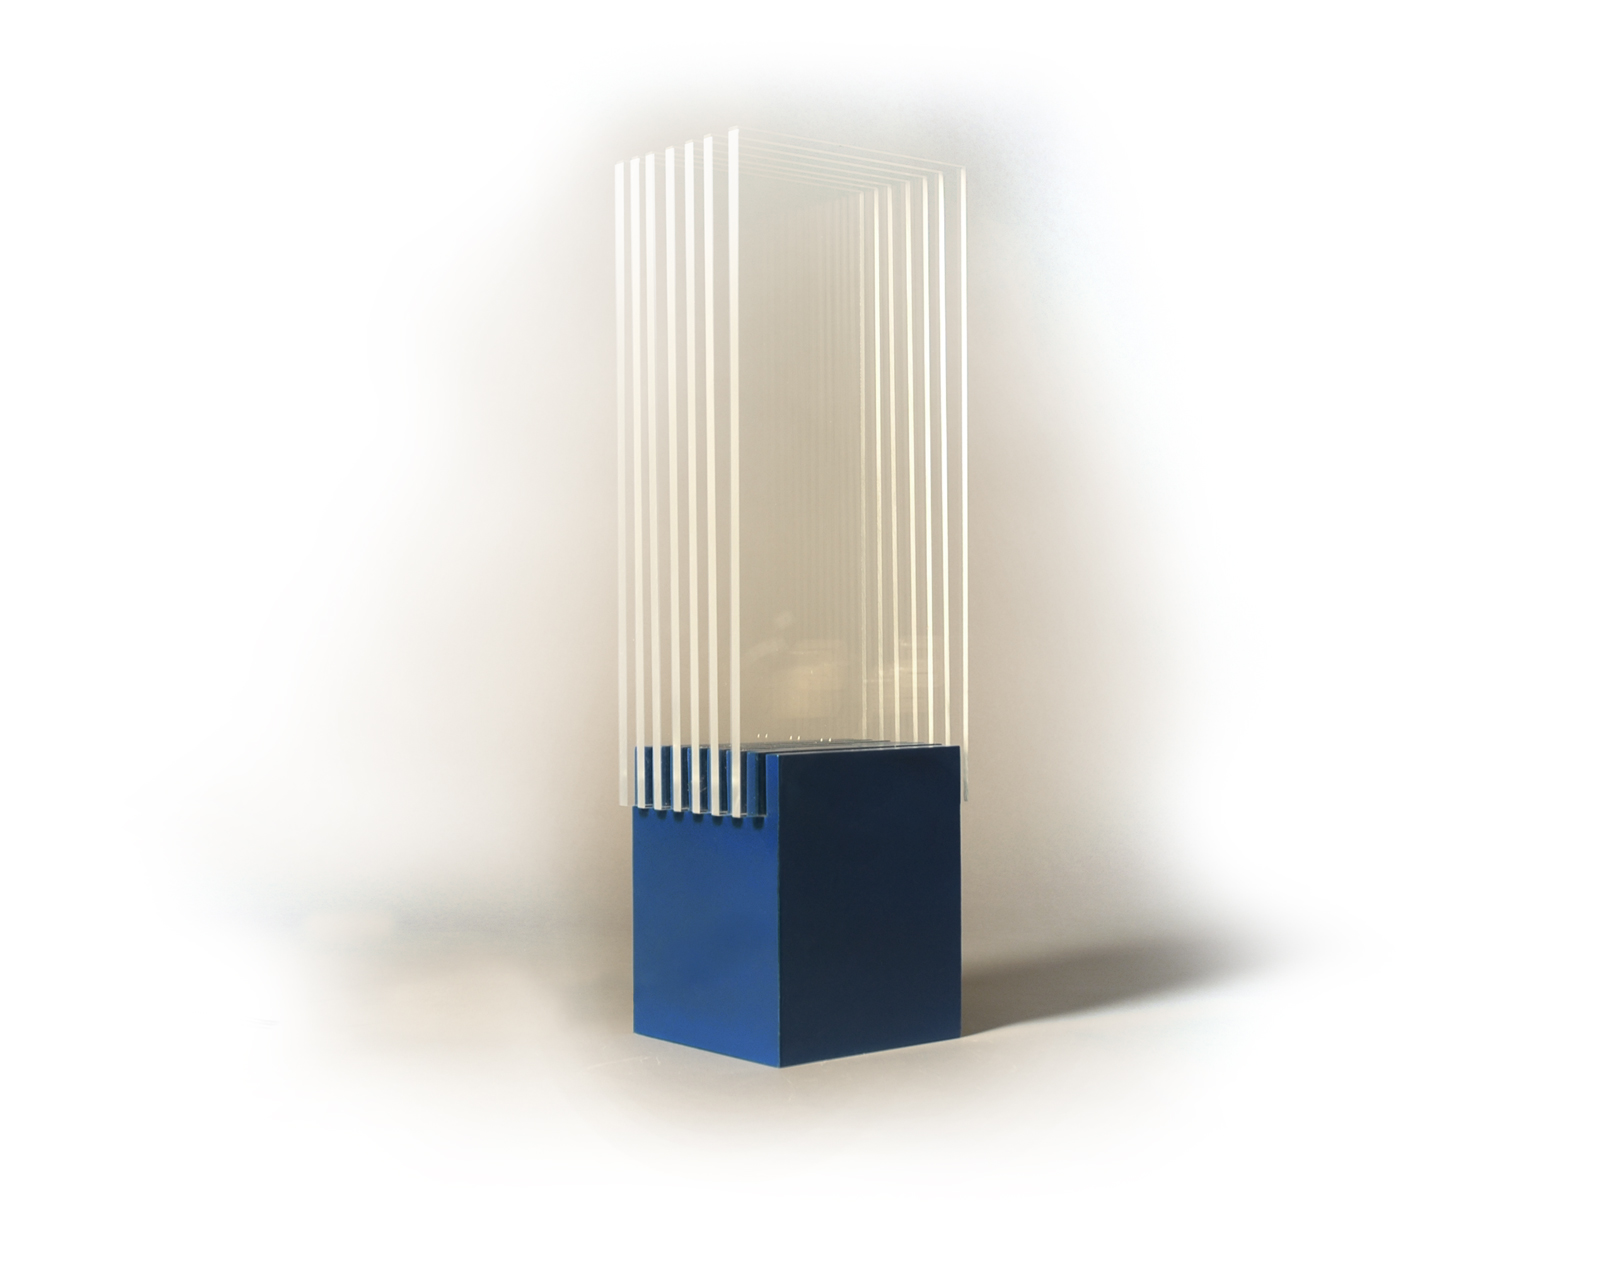 Lampe Produktdesign Holz Glas Licht ambiente